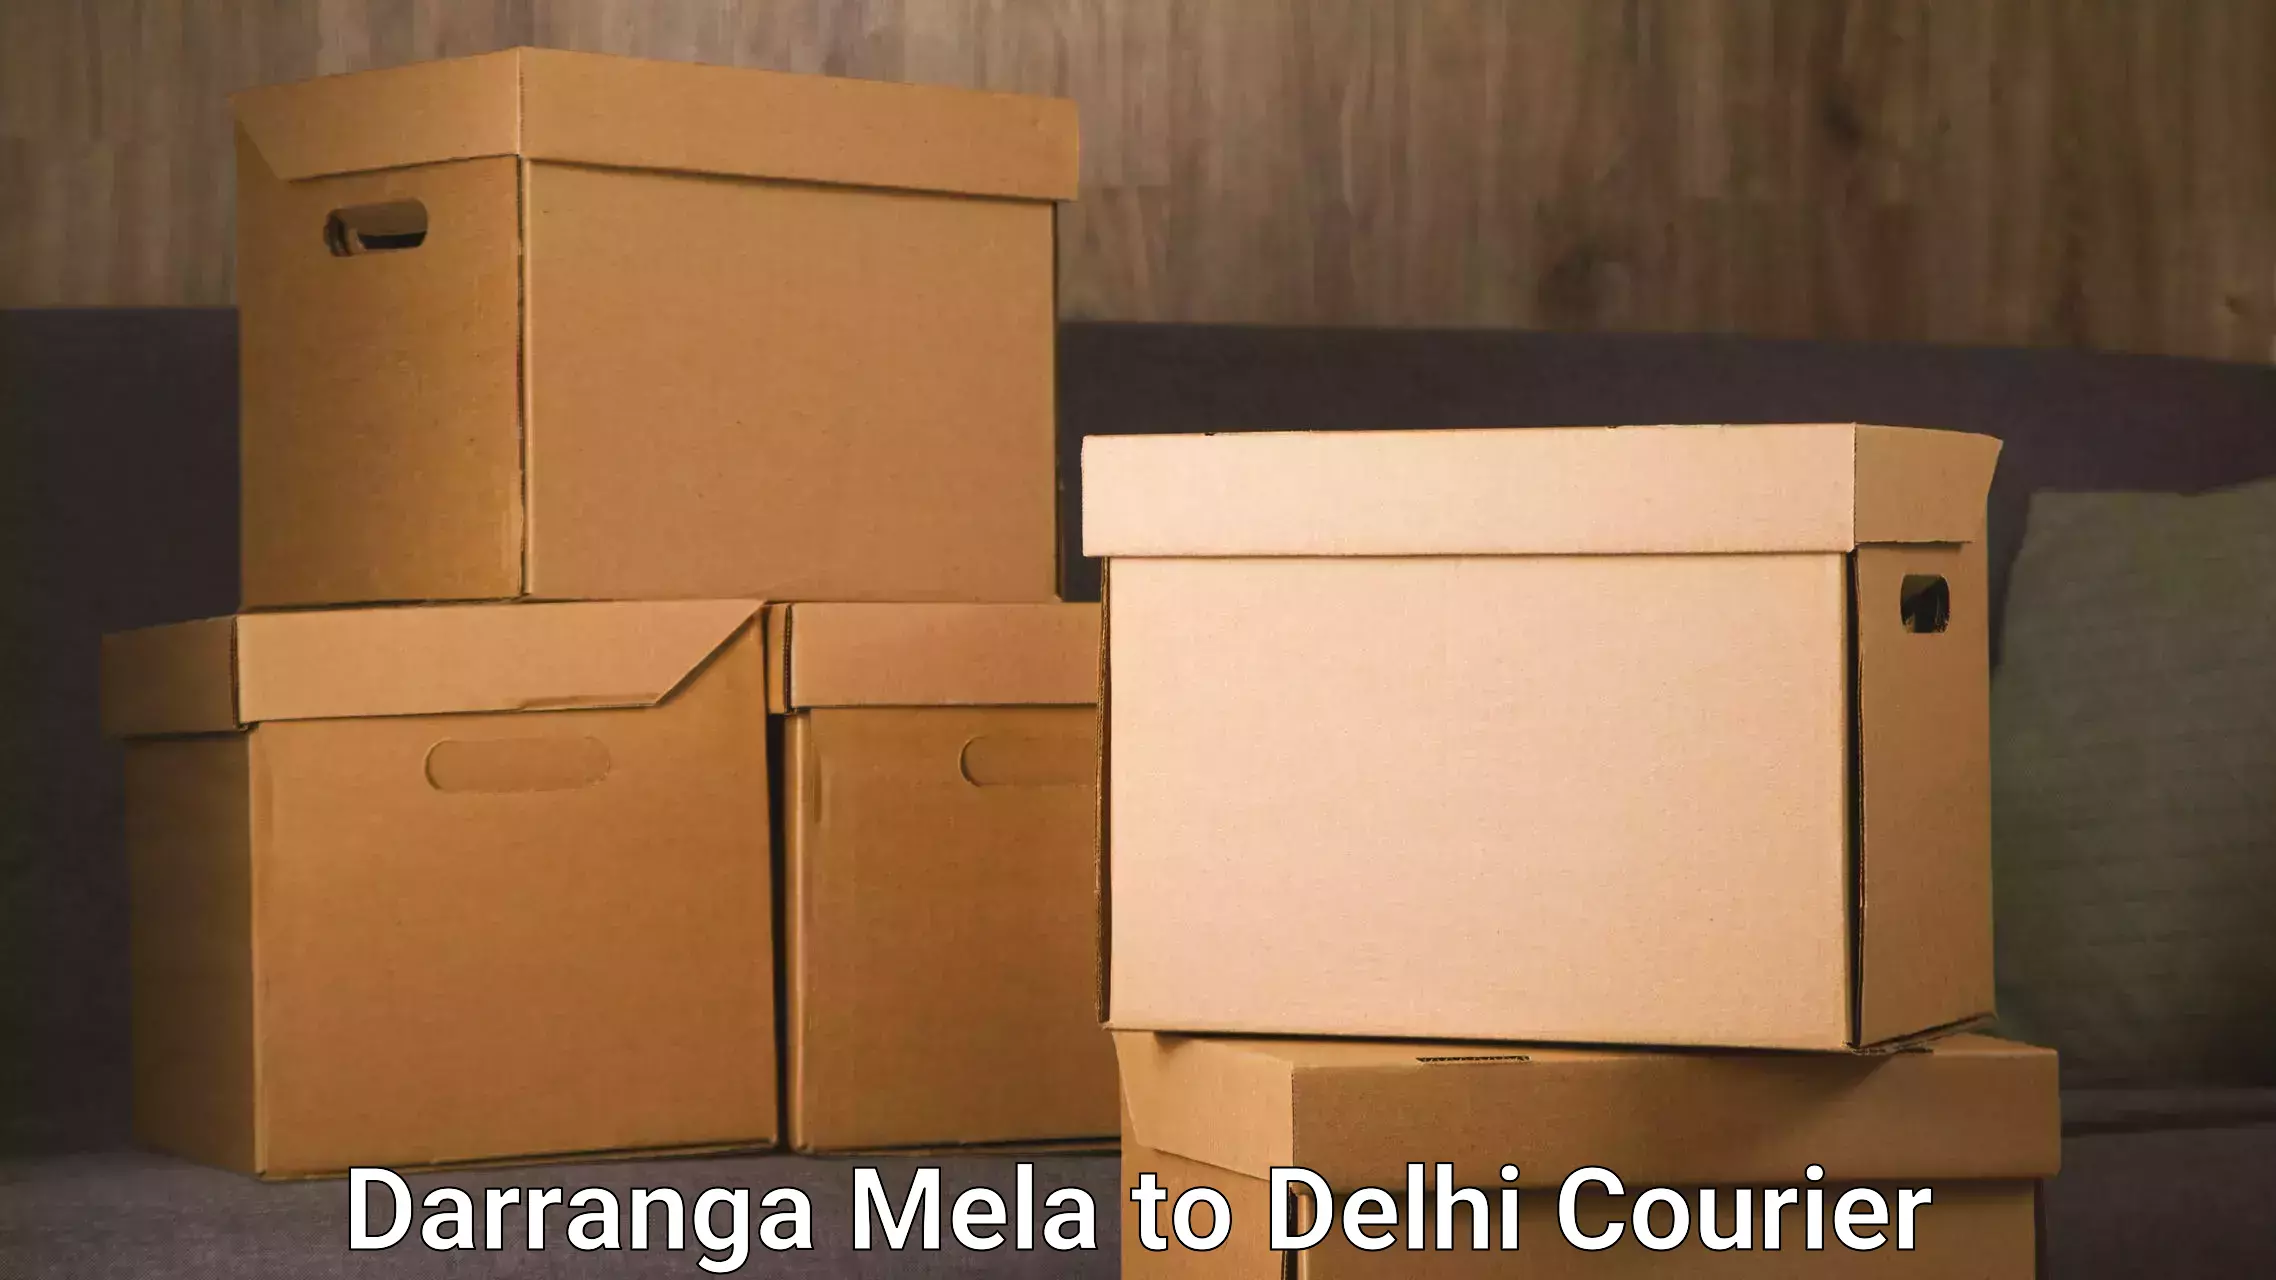 Local courier options Darranga Mela to Delhi